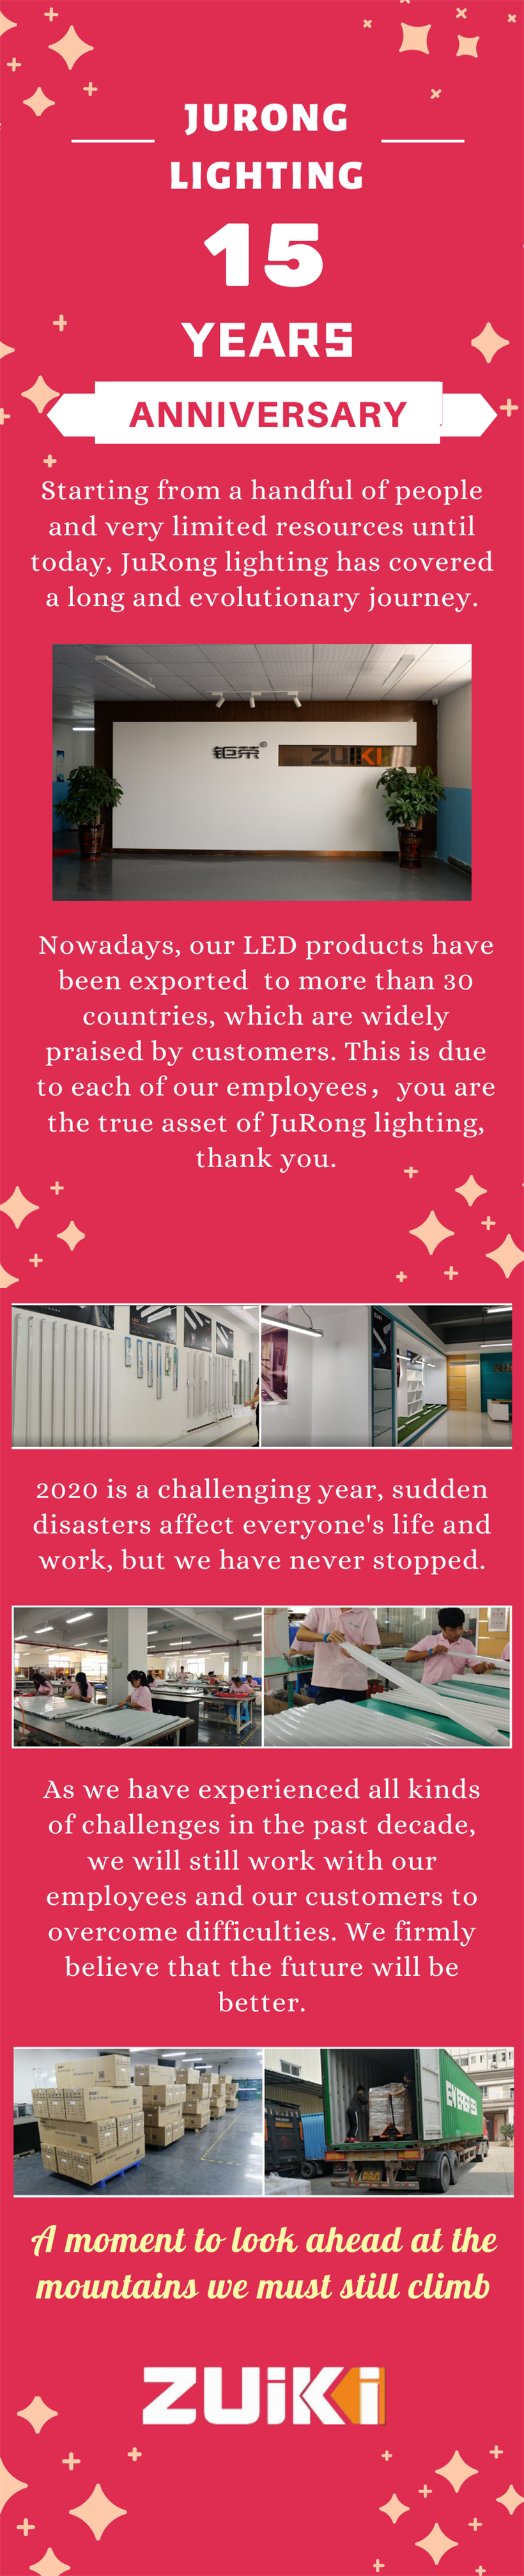 Jurong Lighting 15 Years Anniversary